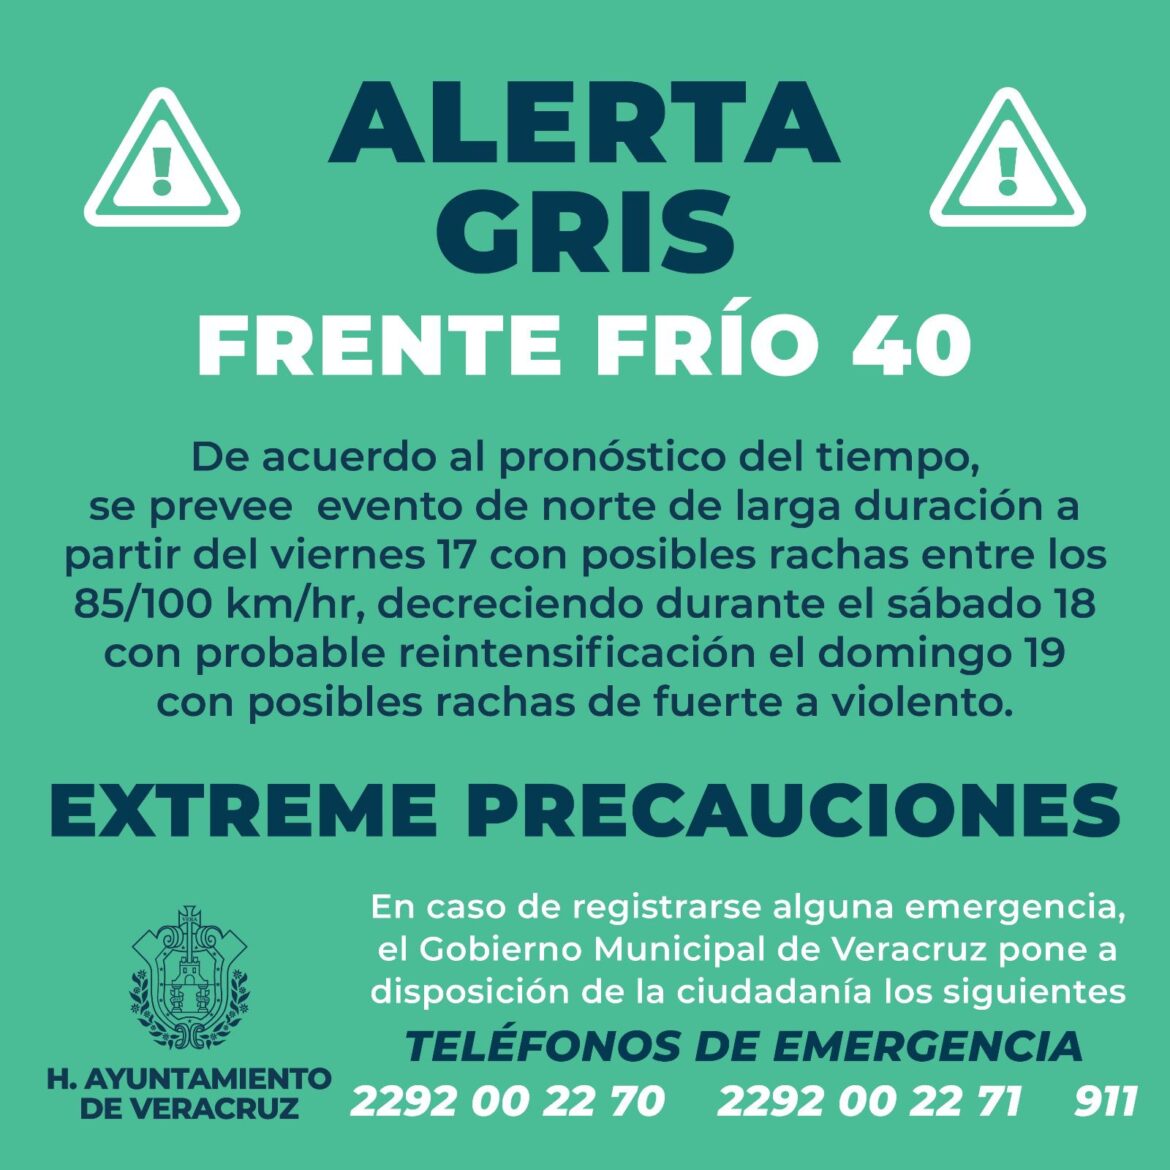 Alerta Gris por la entrada del Frente Frío No. 40 en el Puerto de Veracruz